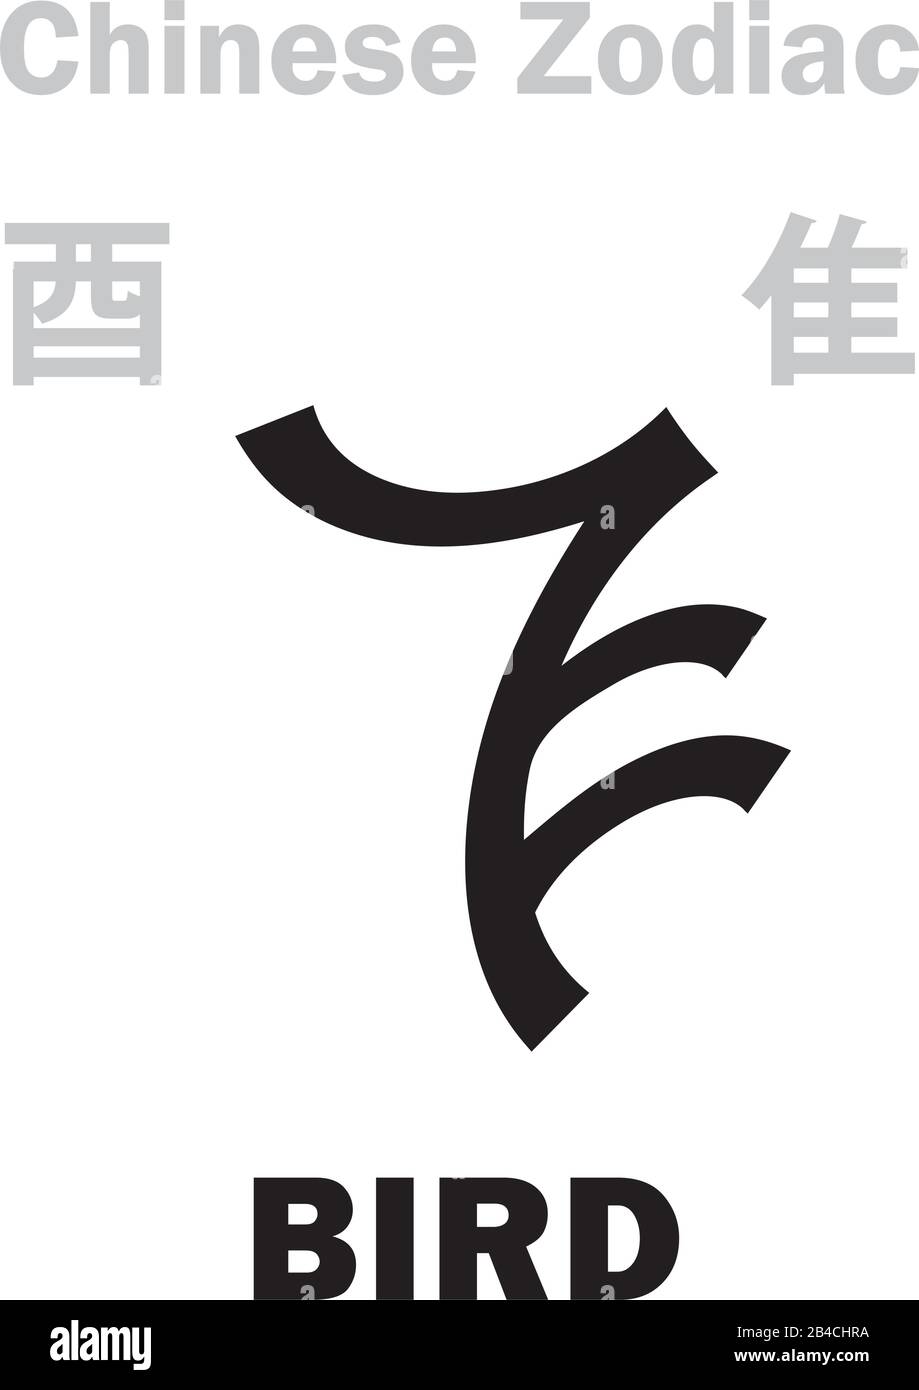 Astrologie Alphabet: Vogel/HAHN, HUHN [隹] Zeichen des chinesischen Zodiac (Der 'Vogel' im burmesischen Zodiac). Chinesisches Zeichen, hieroglyphisches Zeichen. Stock Vektor